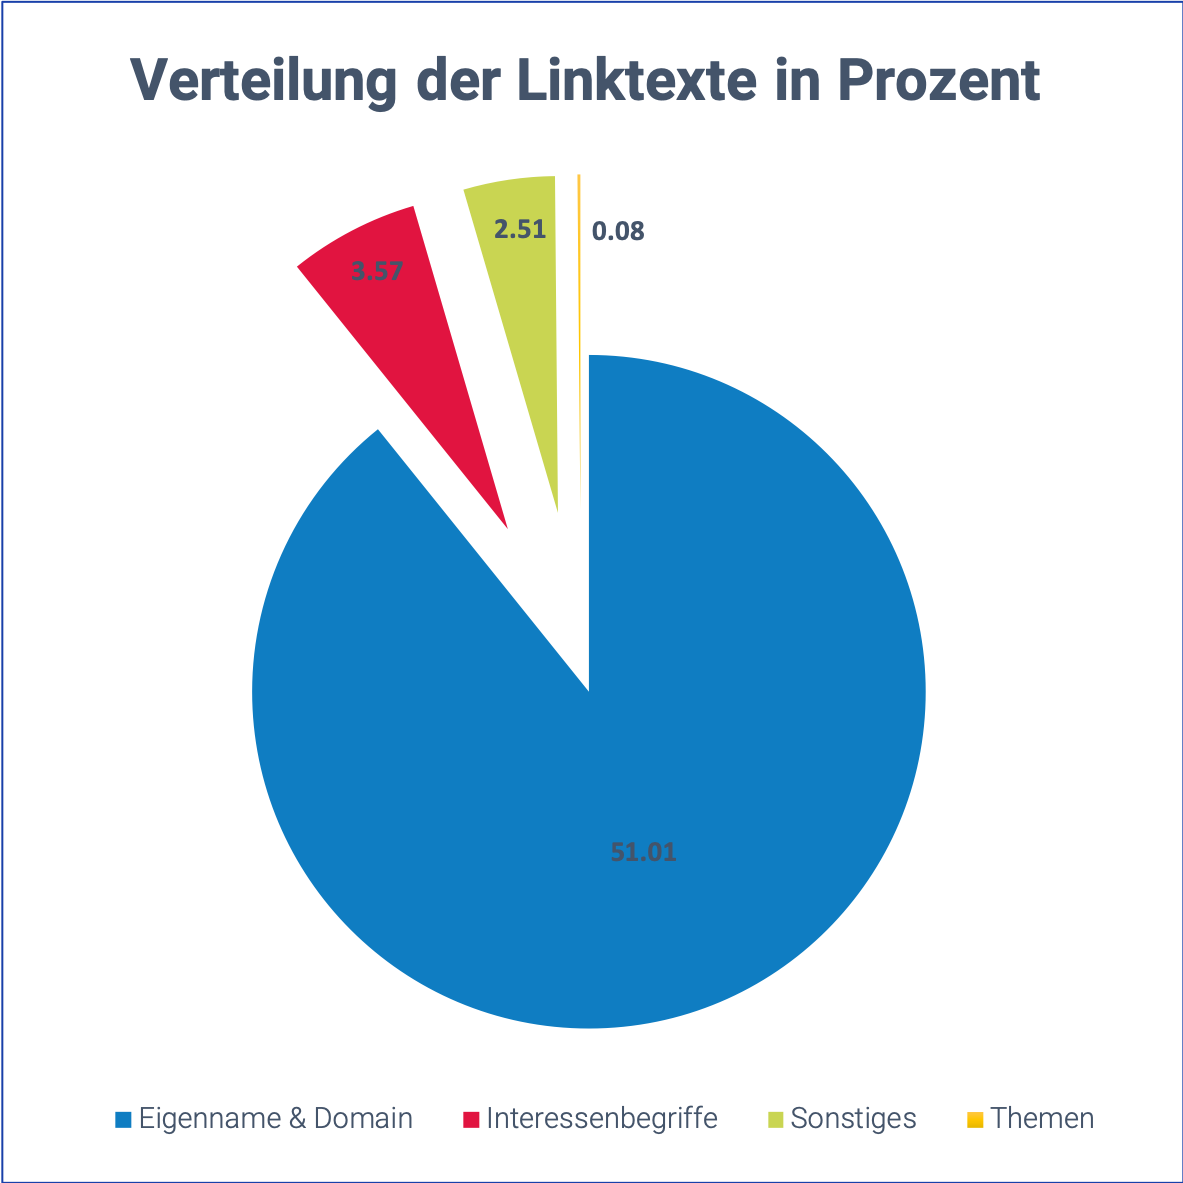 Tortendiagramm zur Verteilung der Linktexte von bonn.de in Prozent. 51.01% sind der Eigenname und die Domain. 3.57 % sind Interessensbegriffe. 2.51% fällt unter Sonstiges und 0.08% sind spezifische Themen.